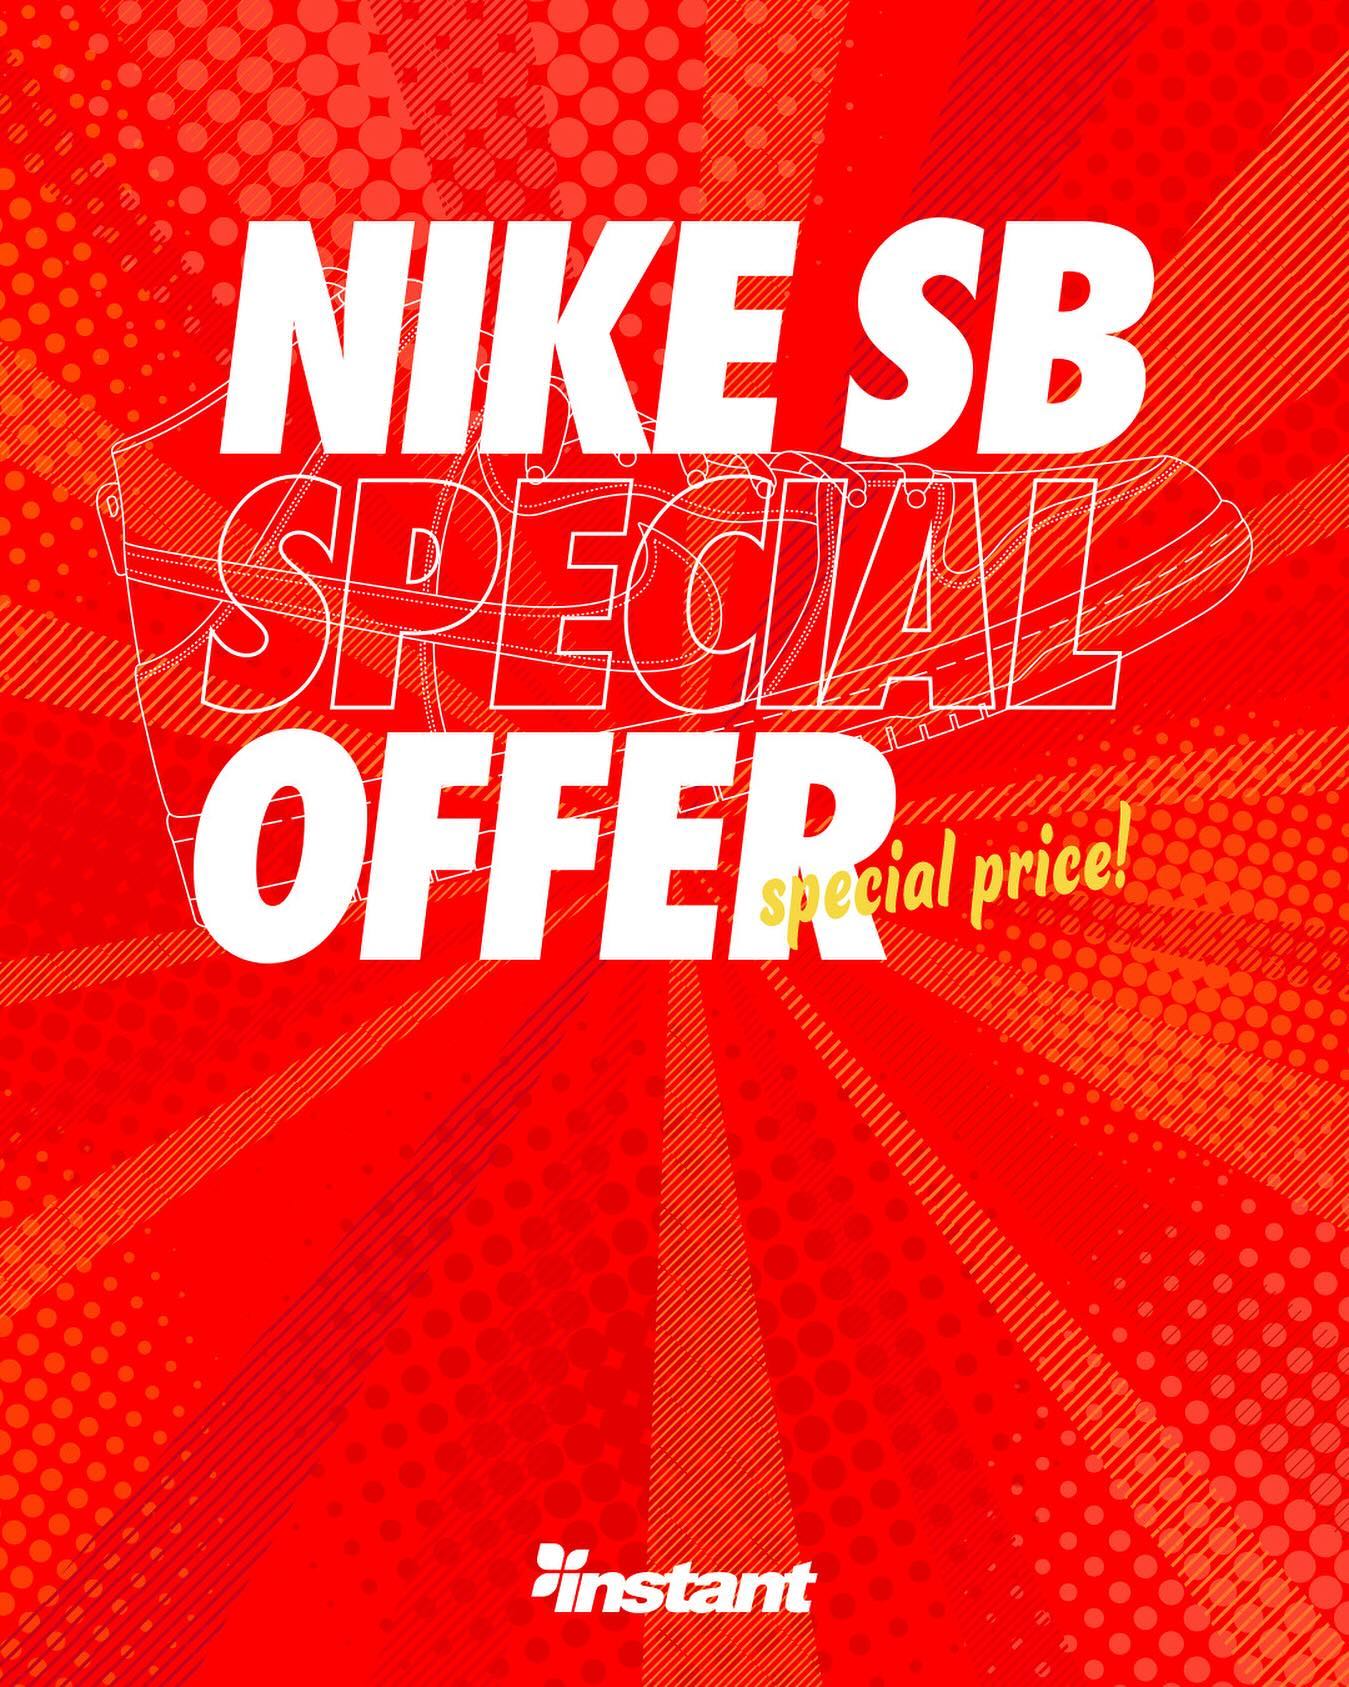 1/13(Sat) Start!!Nike SB "New Year" Special Offerを開催いたします。新年第一弾！Nike SB Special Offerがスタート！対象モデル拡大、OFF率UPで更にリフレッシュいたします。ガンガンにスケートシューズを履き潰すスケーターの皆さんはもちろん、今年スケートボードを始める初心者の方々にも、是非ともこの機会を逃さずに、初めてのスケートシューズを手に入れて下さい。マイサイズはお早めに︎Instant全店舗およびWebストアで、皆さまのご来店をお待ちしております！#nikesbspecialoffer#instantskateshop